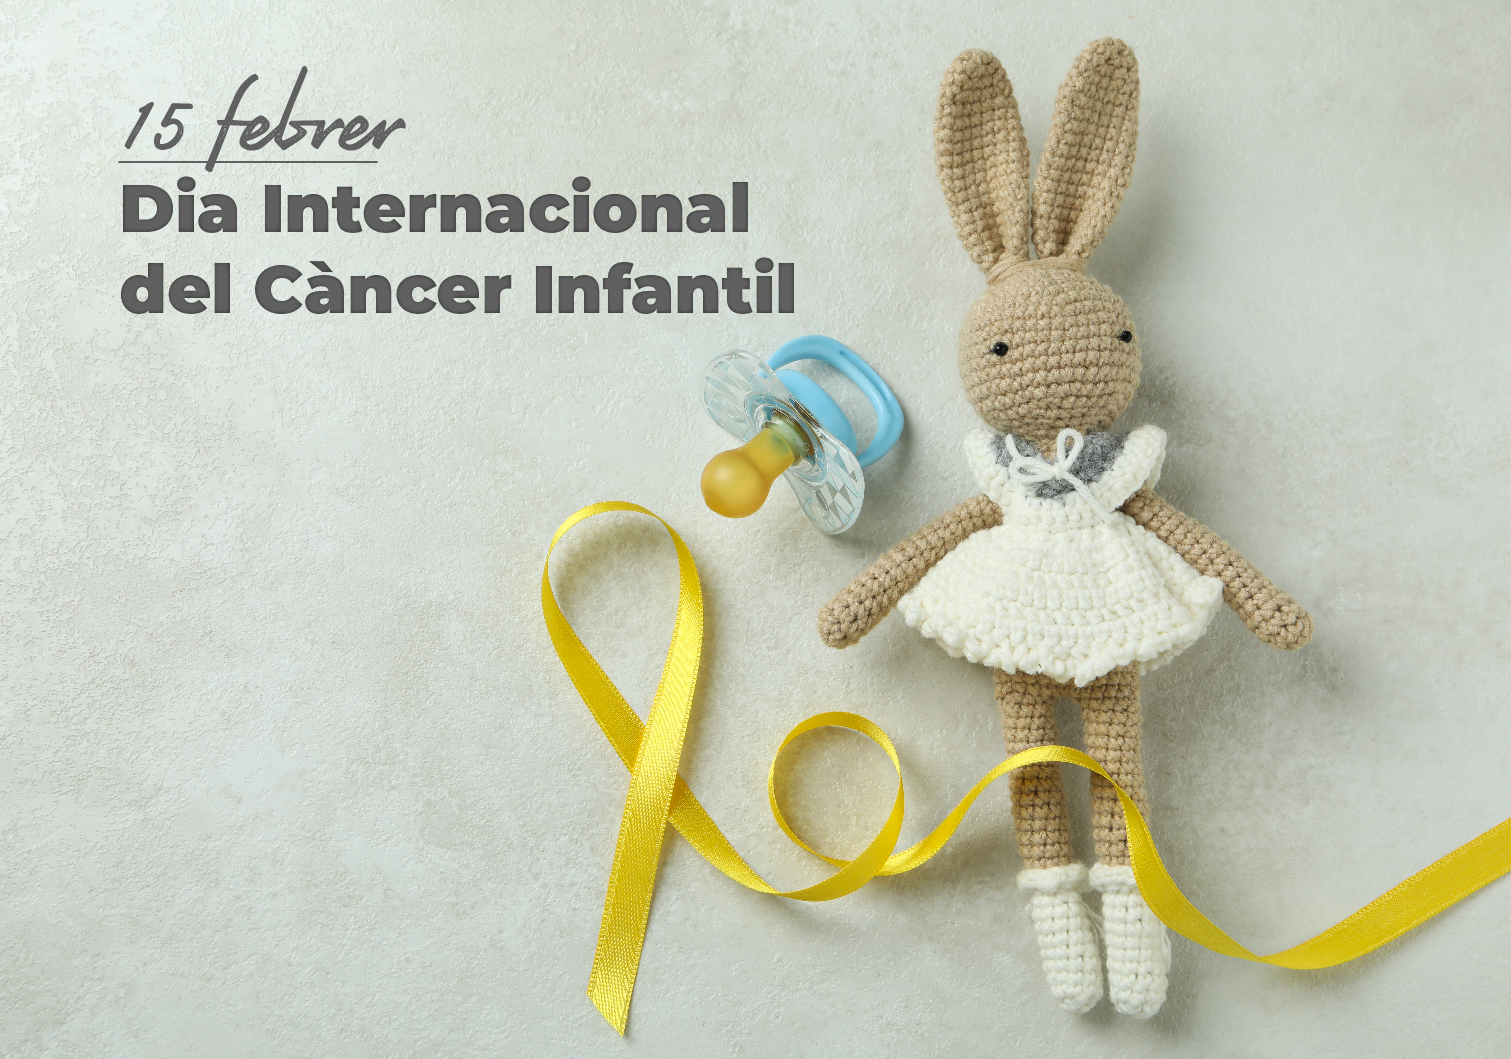 15 de febrero. Día internacional del cáncer infantil con datos esperanzadores.